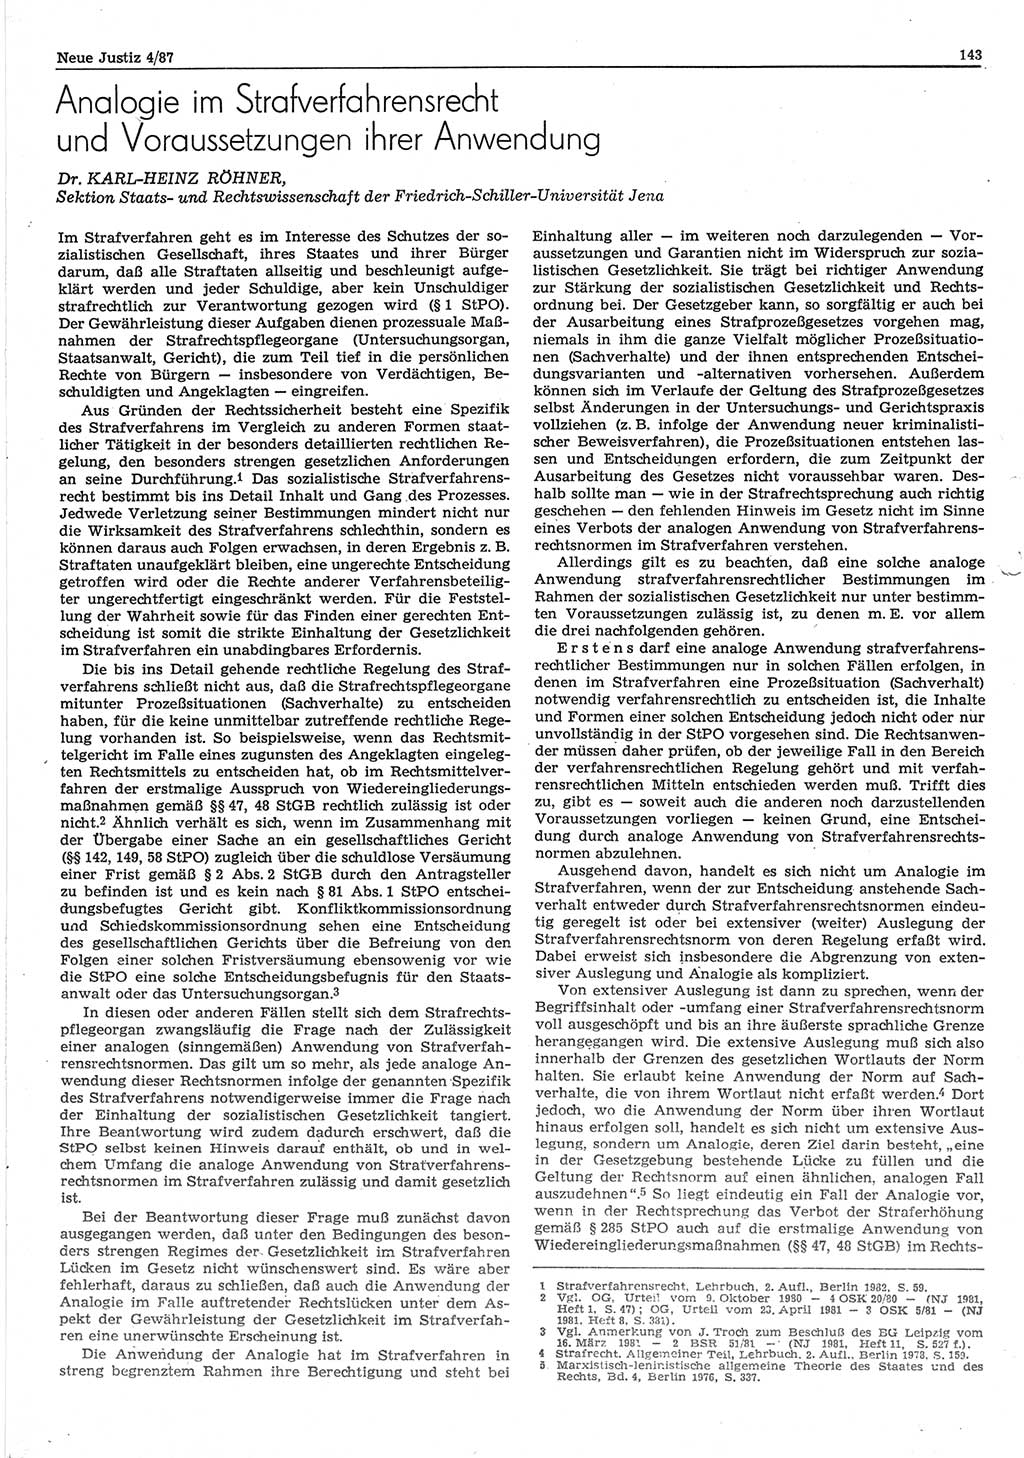 Neue Justiz (NJ), Zeitschrift für sozialistisches Recht und Gesetzlichkeit [Deutsche Demokratische Republik (DDR)], 41. Jahrgang 1987, Seite 143 (NJ DDR 1987, S. 143)